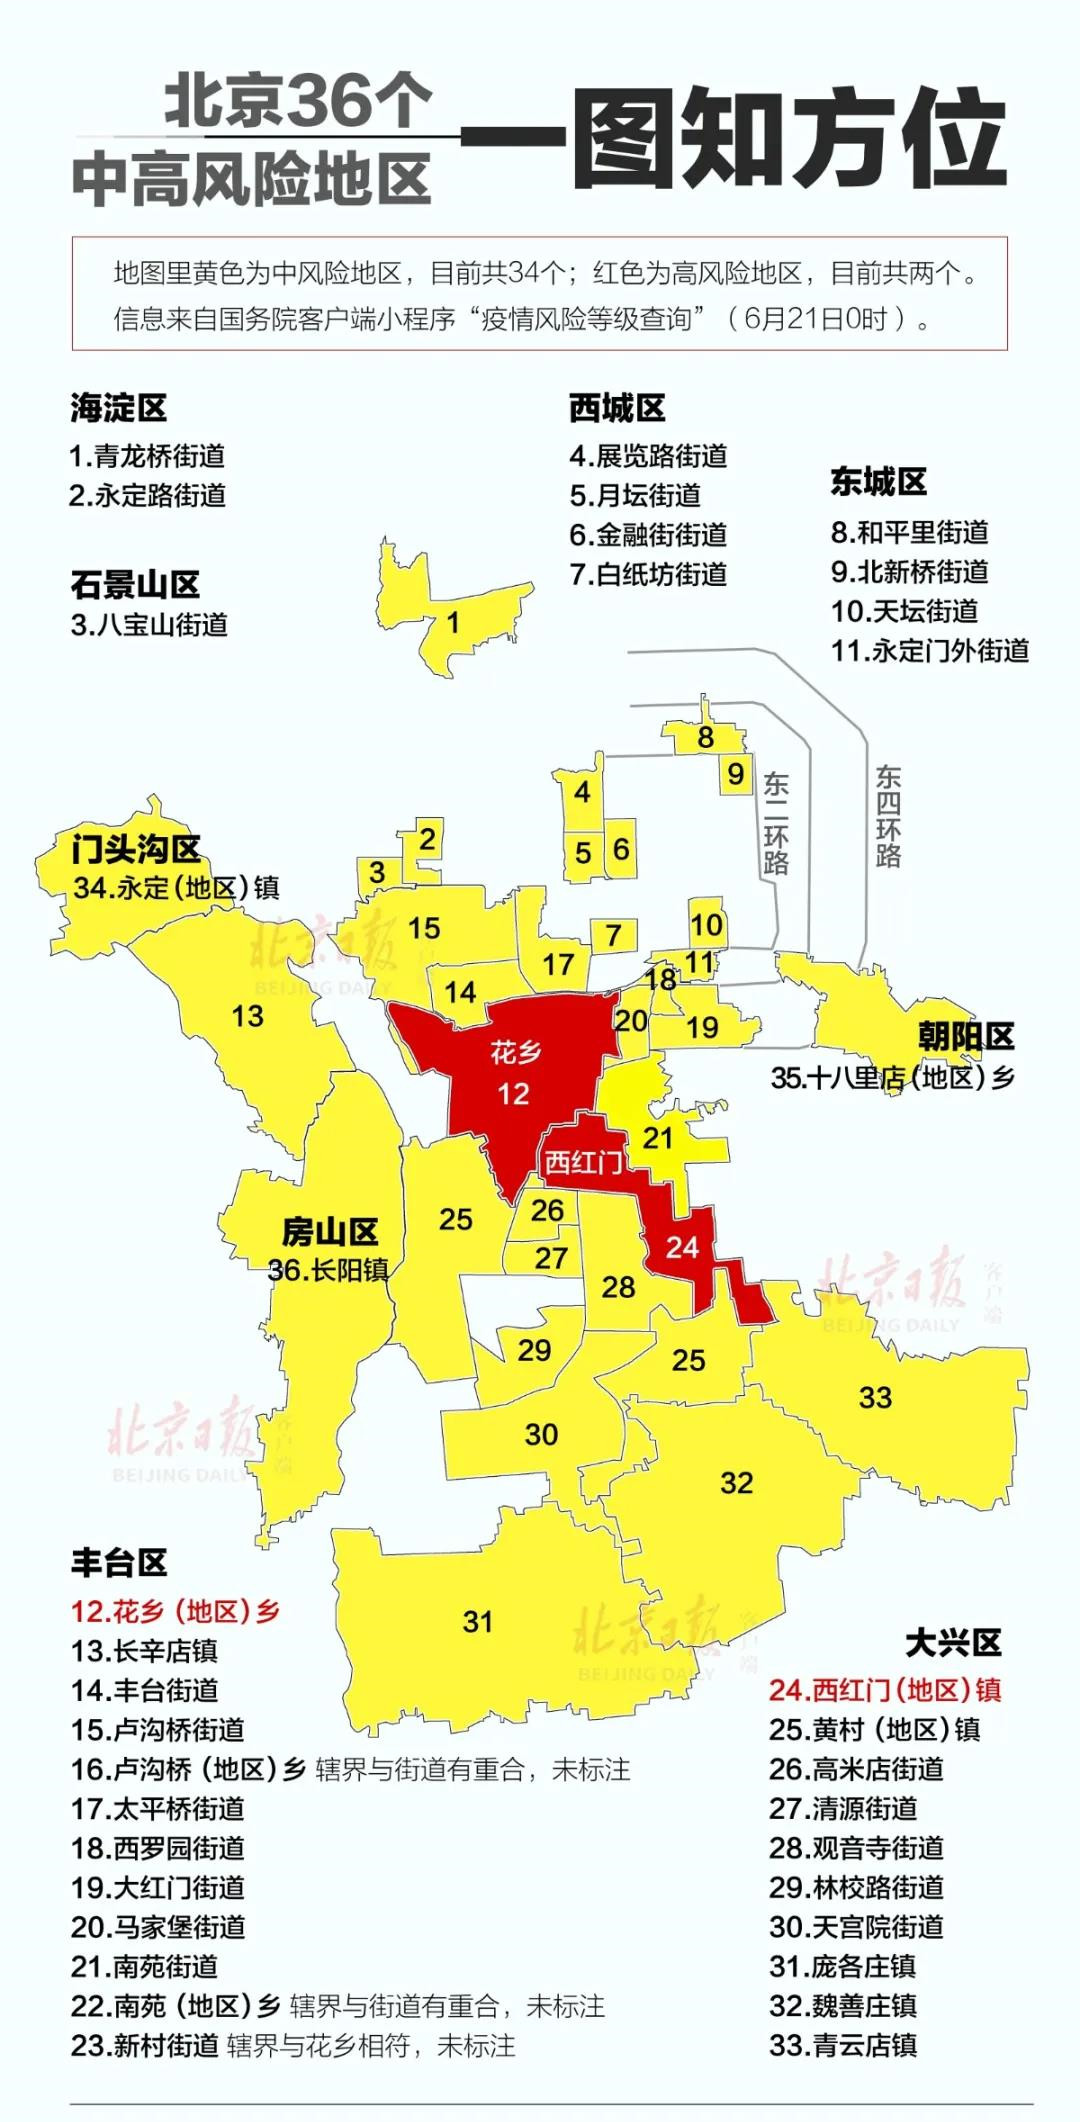 疫情风险等级查询上了解到,截至6月20日15时,北京丰台马家堡街道升级